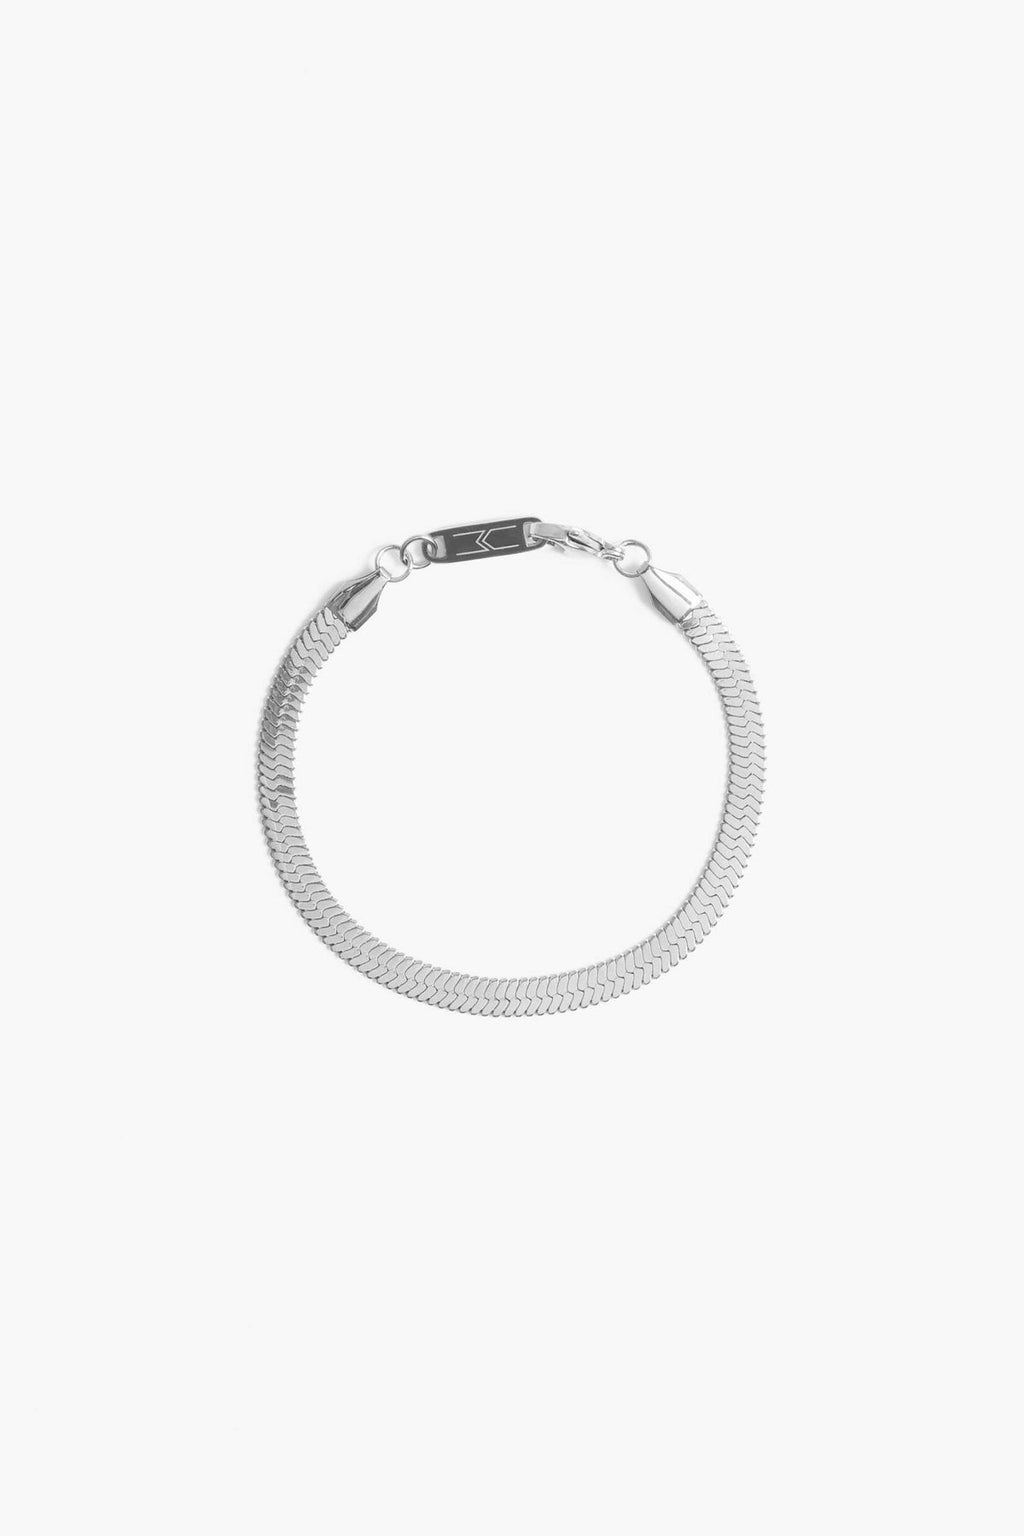 Marrin Costello Jewelry - Ramsey 5mm Bracelet - Silver